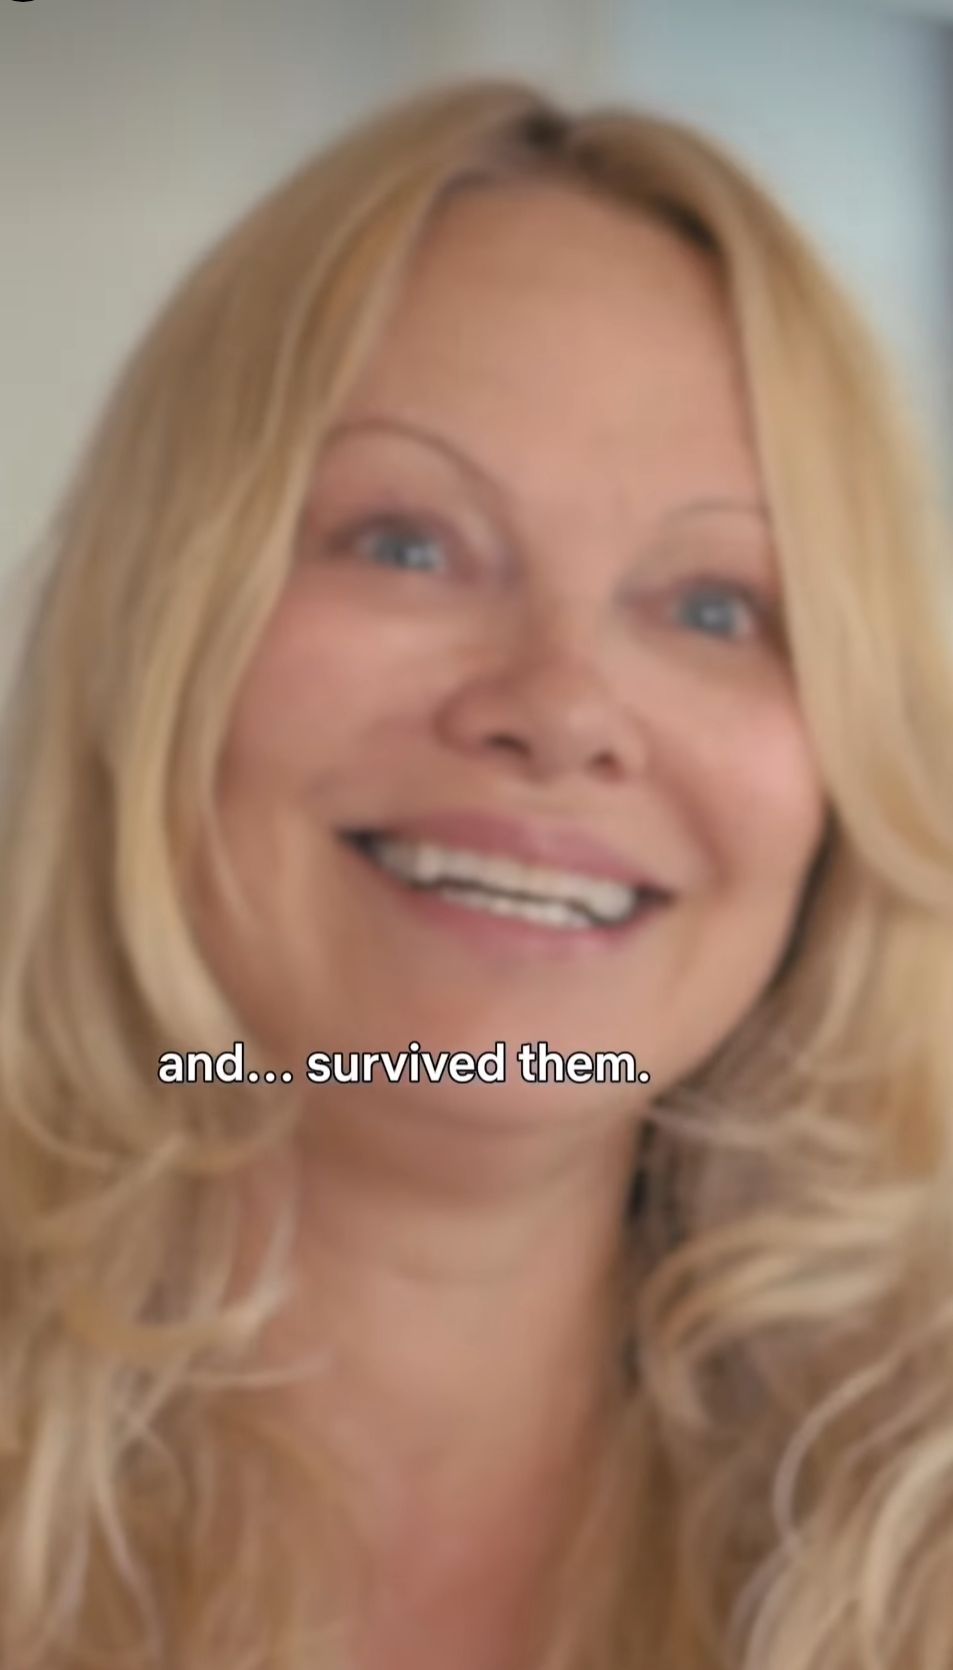 salah satu scene dalam film dokumenter Pamela Anderson